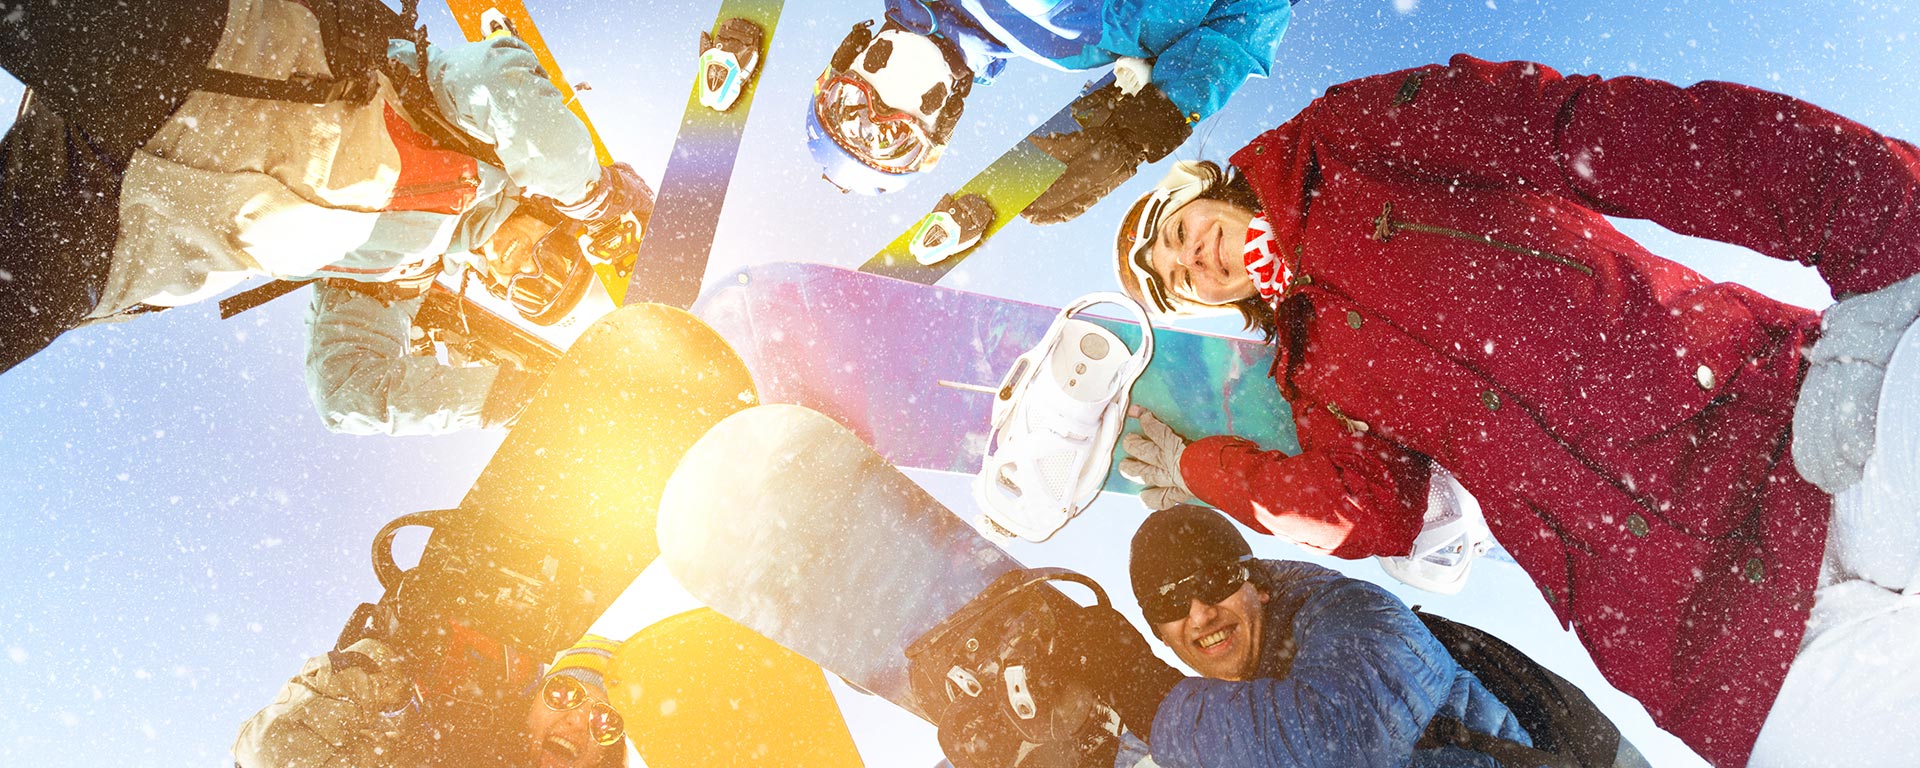 Aufnahme von mehreren Snowboardern mit Sonnenlicht im Hintergrund